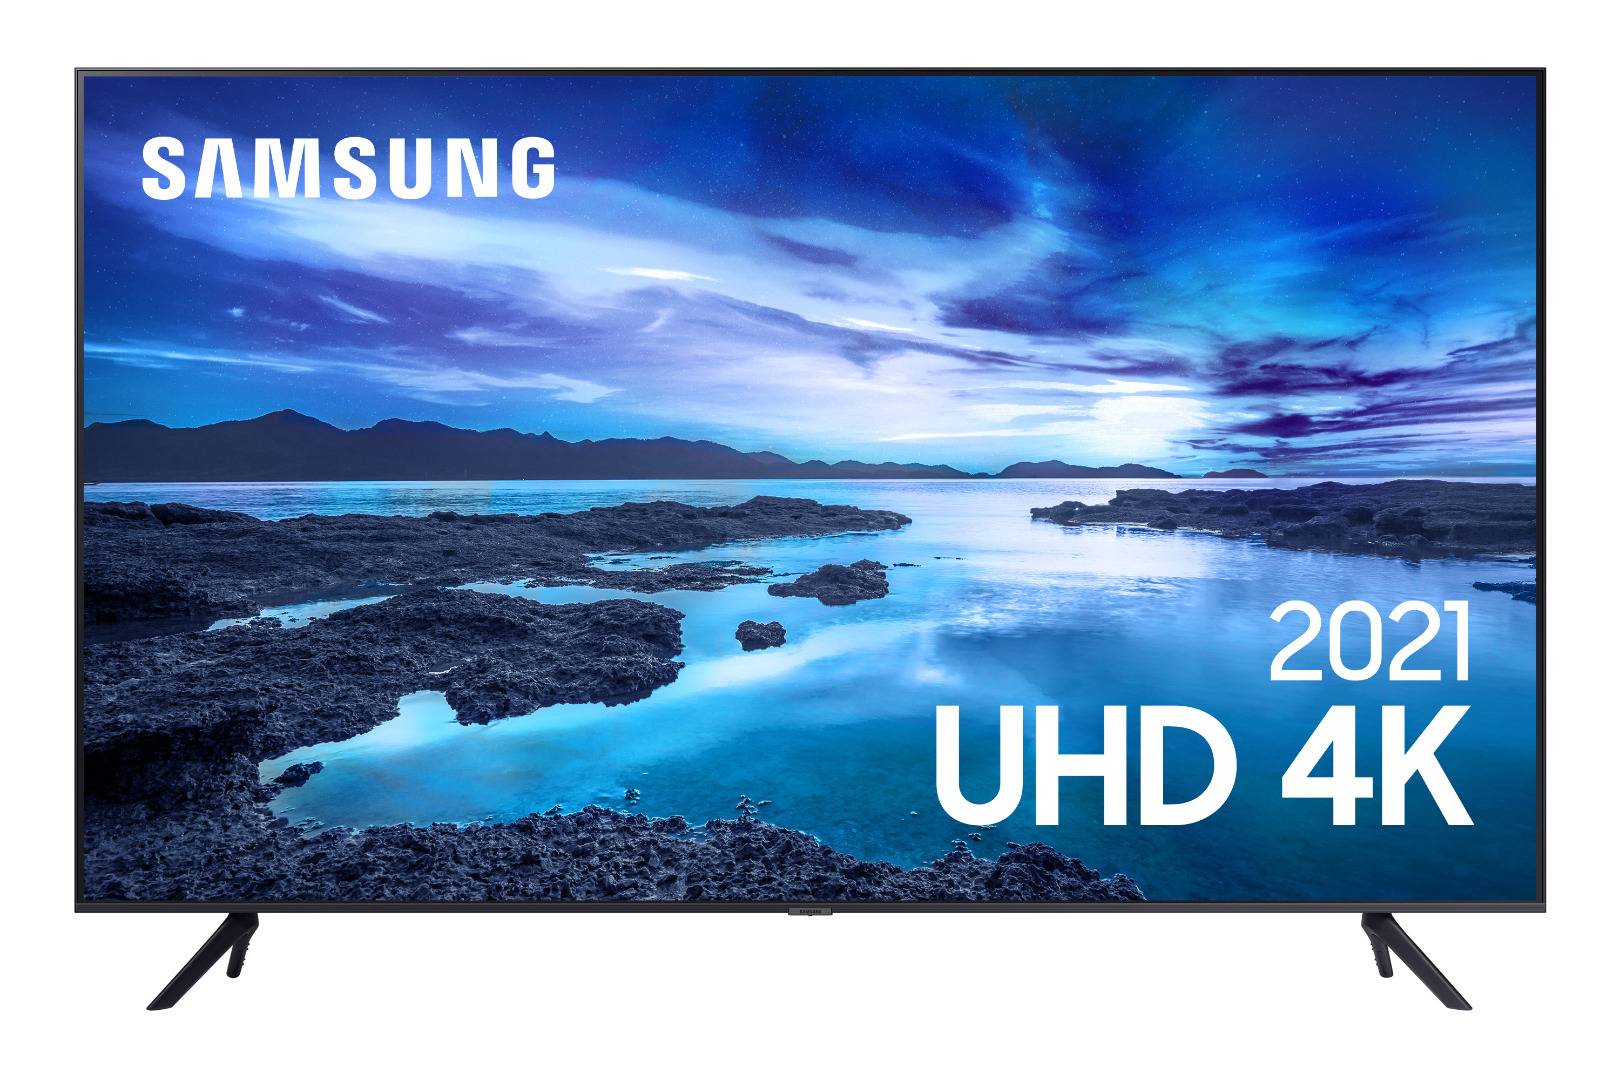 Smart TV 65 UHD 4K Samsung com Processador Crystal 4K, Controle Único, Alexa Built in e Wi-Fi - 65AU7700